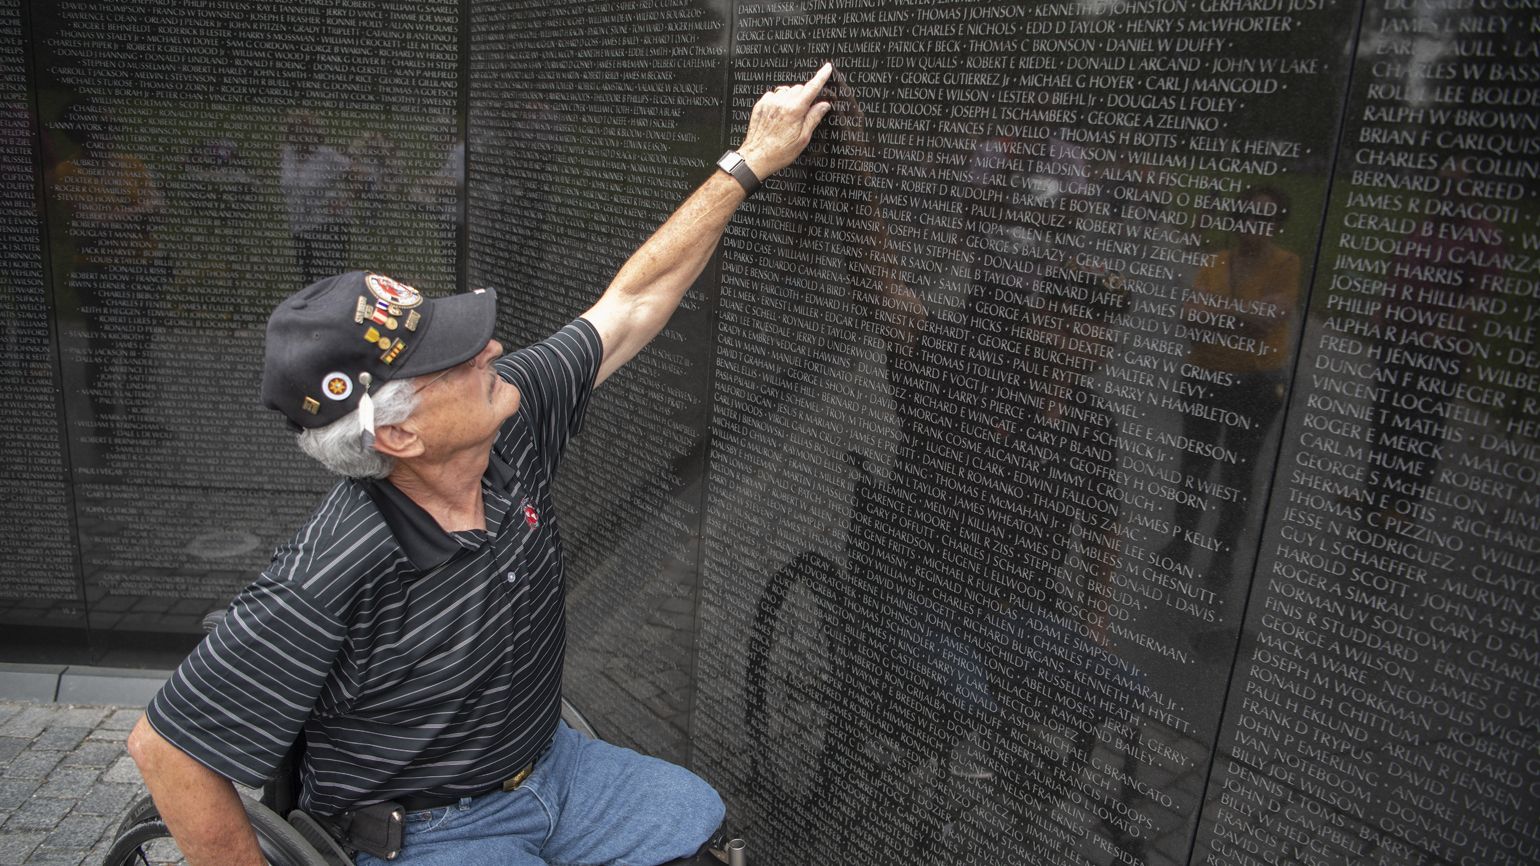 Eddie Beesley at the Vietnam Veterans Memorial in Washington D.C.